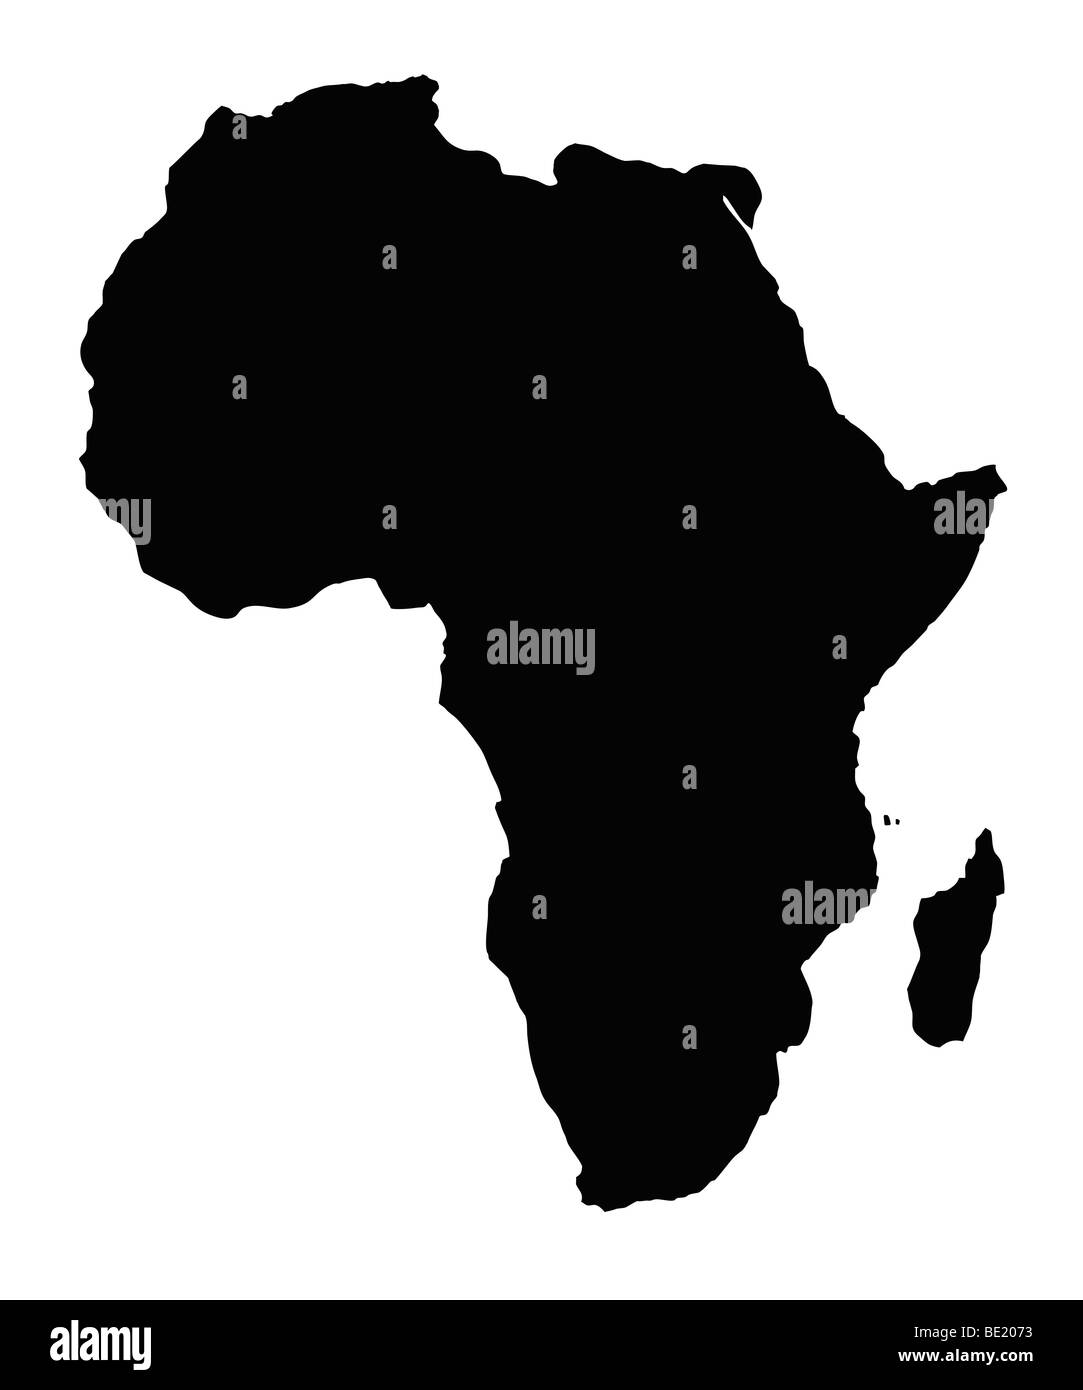 Mappa del continente africano, isolato su sfondo bianco. Foto Stock